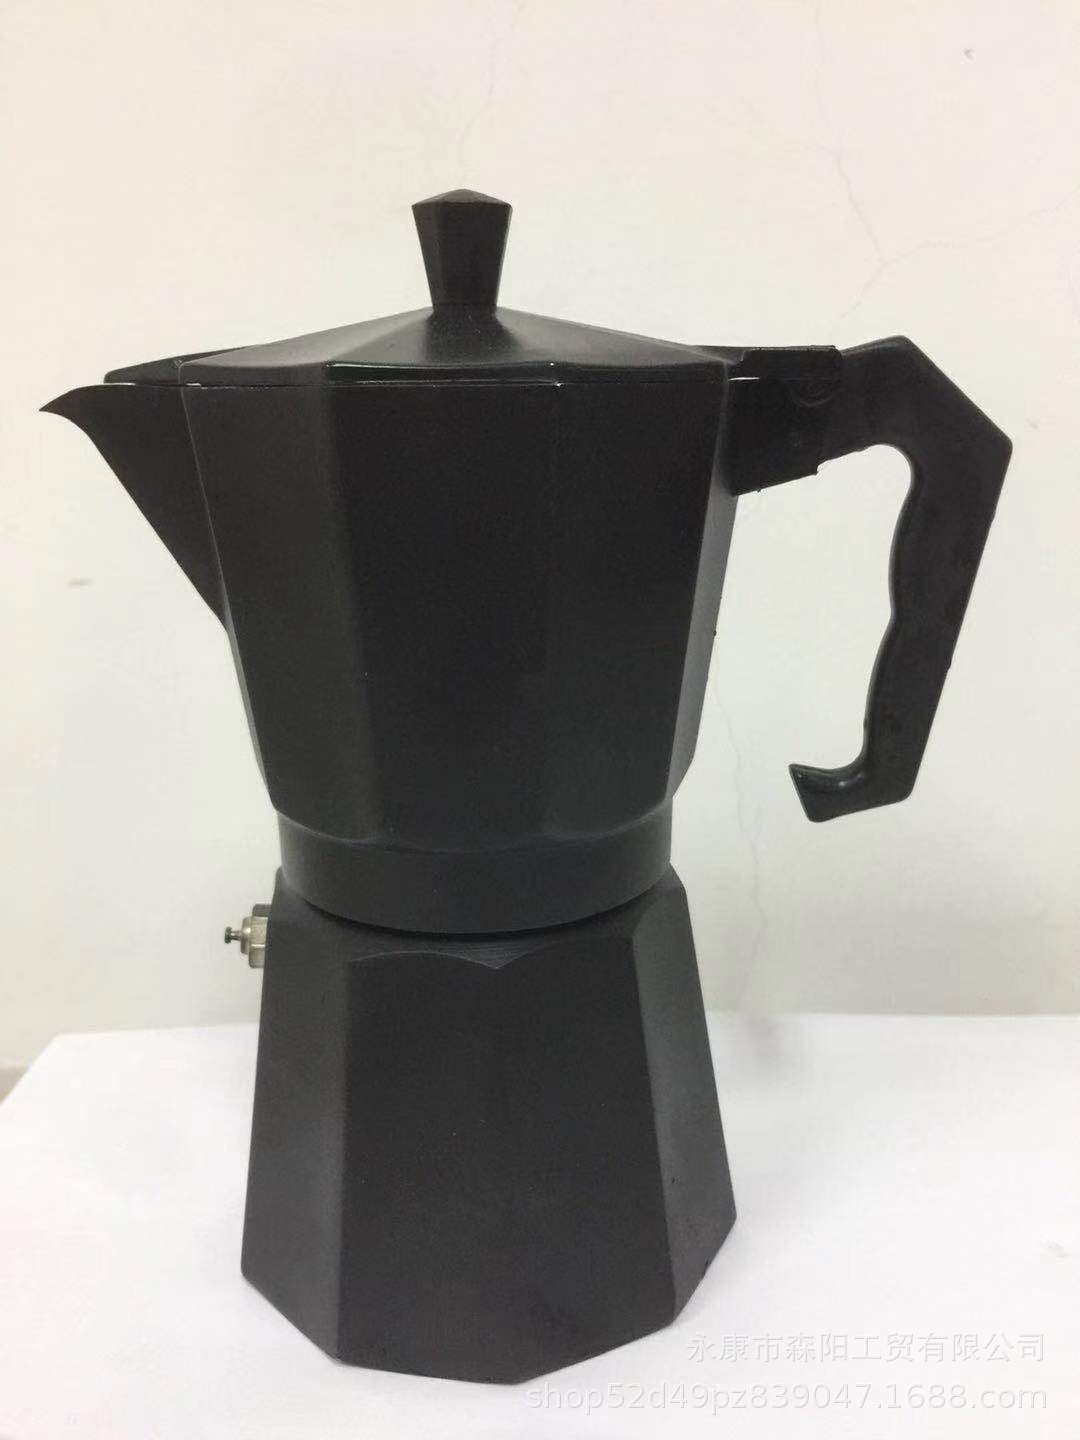 现货批发亚光黑铝制摩卡壶八角咖啡壶加厚升级款咖啡壶可定制LOGO